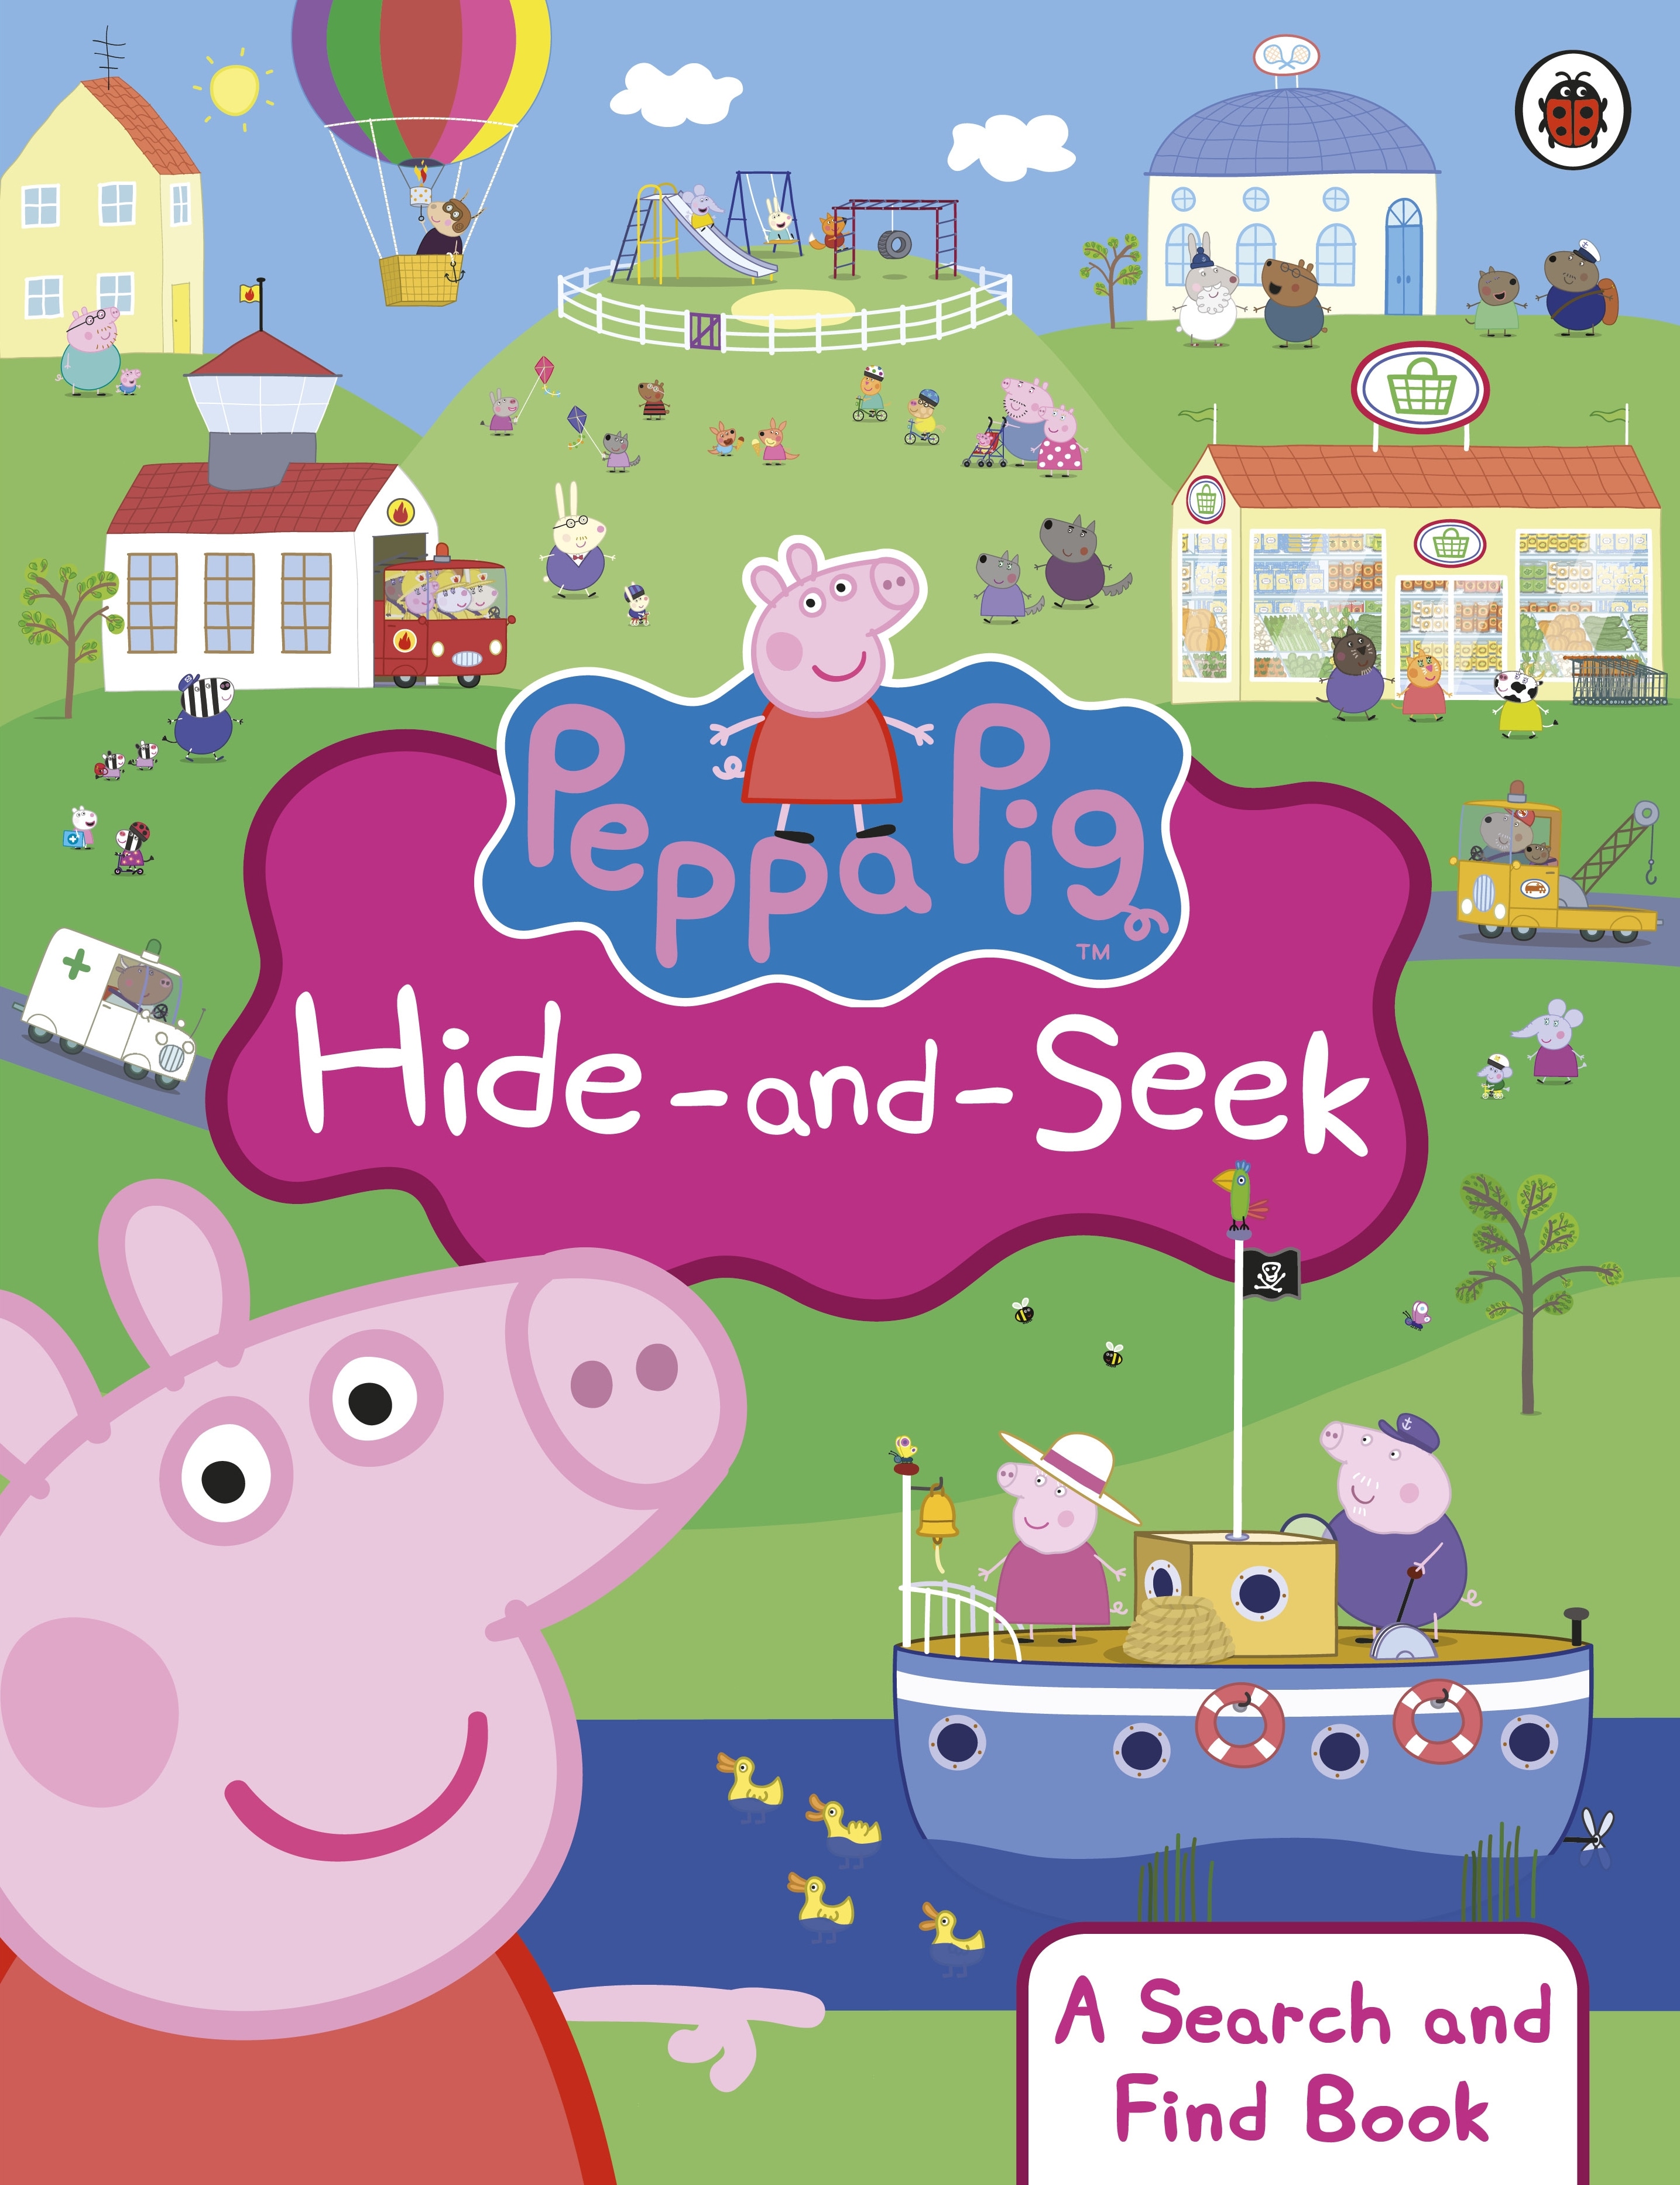 Book “Peppa Pig: Hide-and-Seek” by Peppa Pig — September 4, 2014